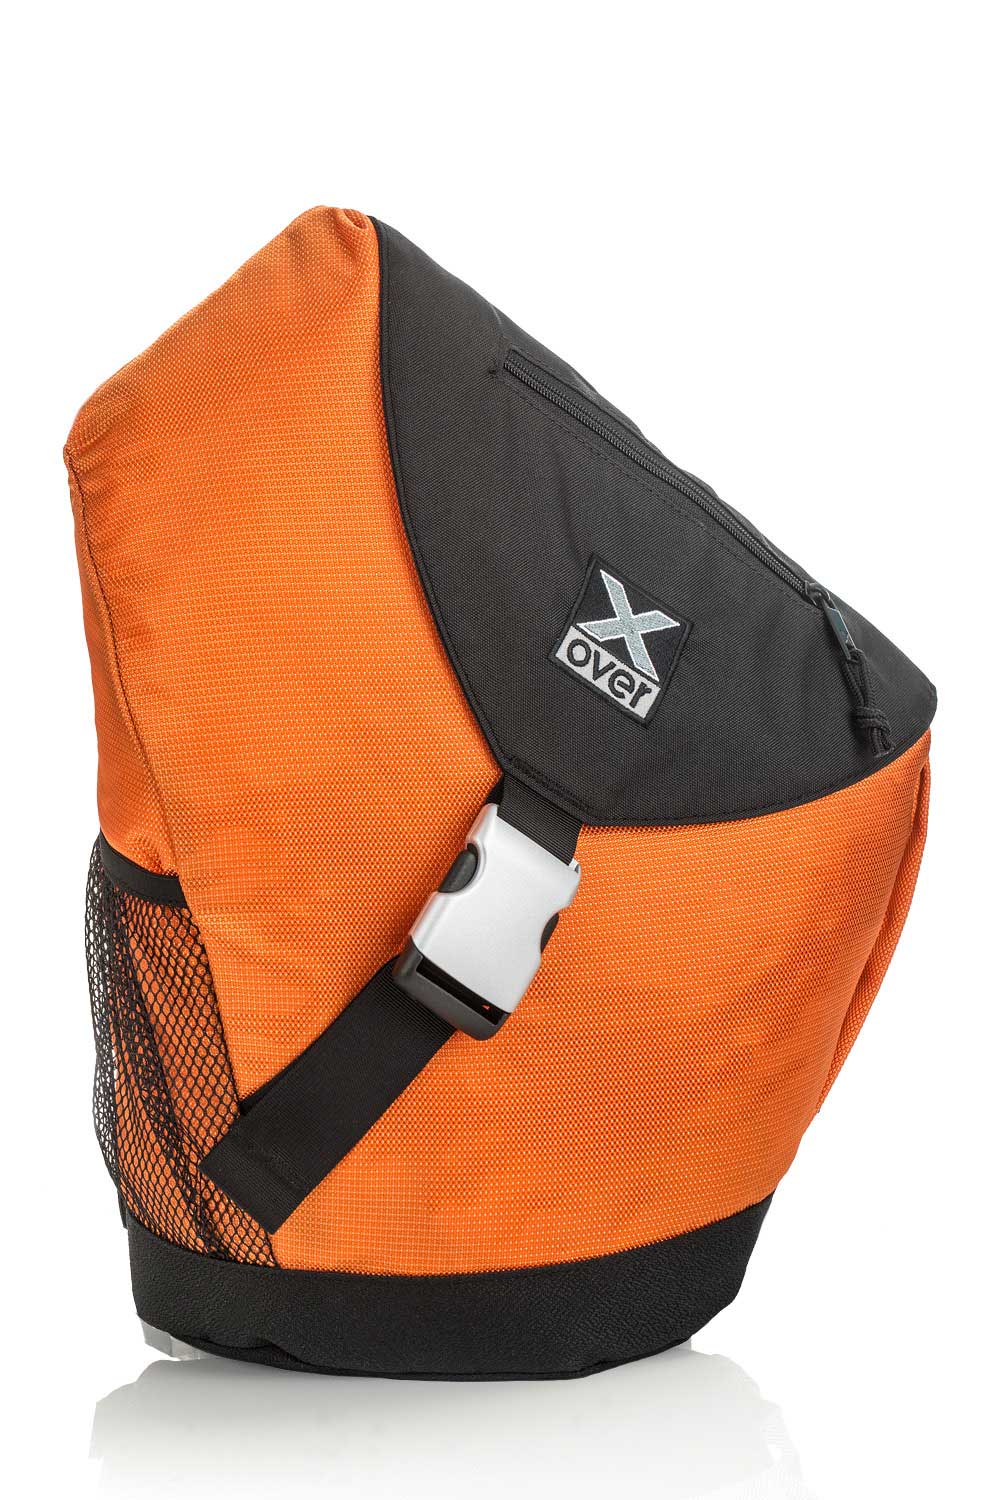 X-over Jamaica bag in color orange